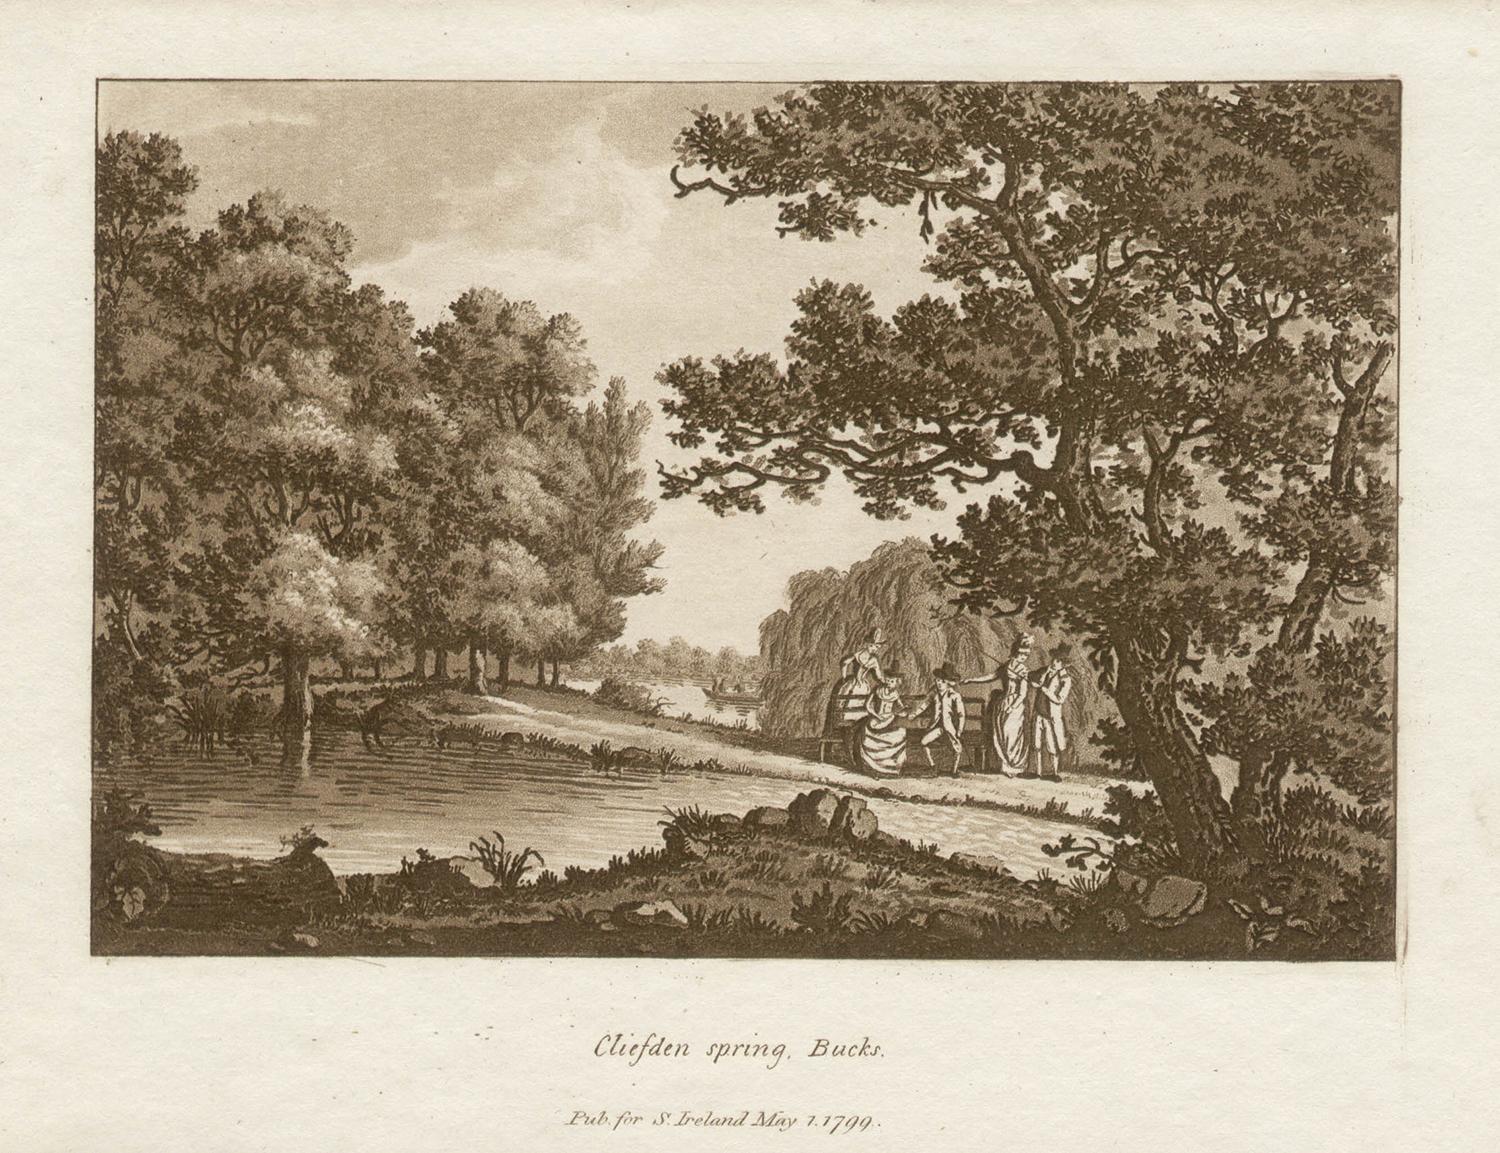 Cliveden-feder, Schnallen, Thames, englische sepiafarbene Aquatinta des späten 18. Jahrhunderts, 1799